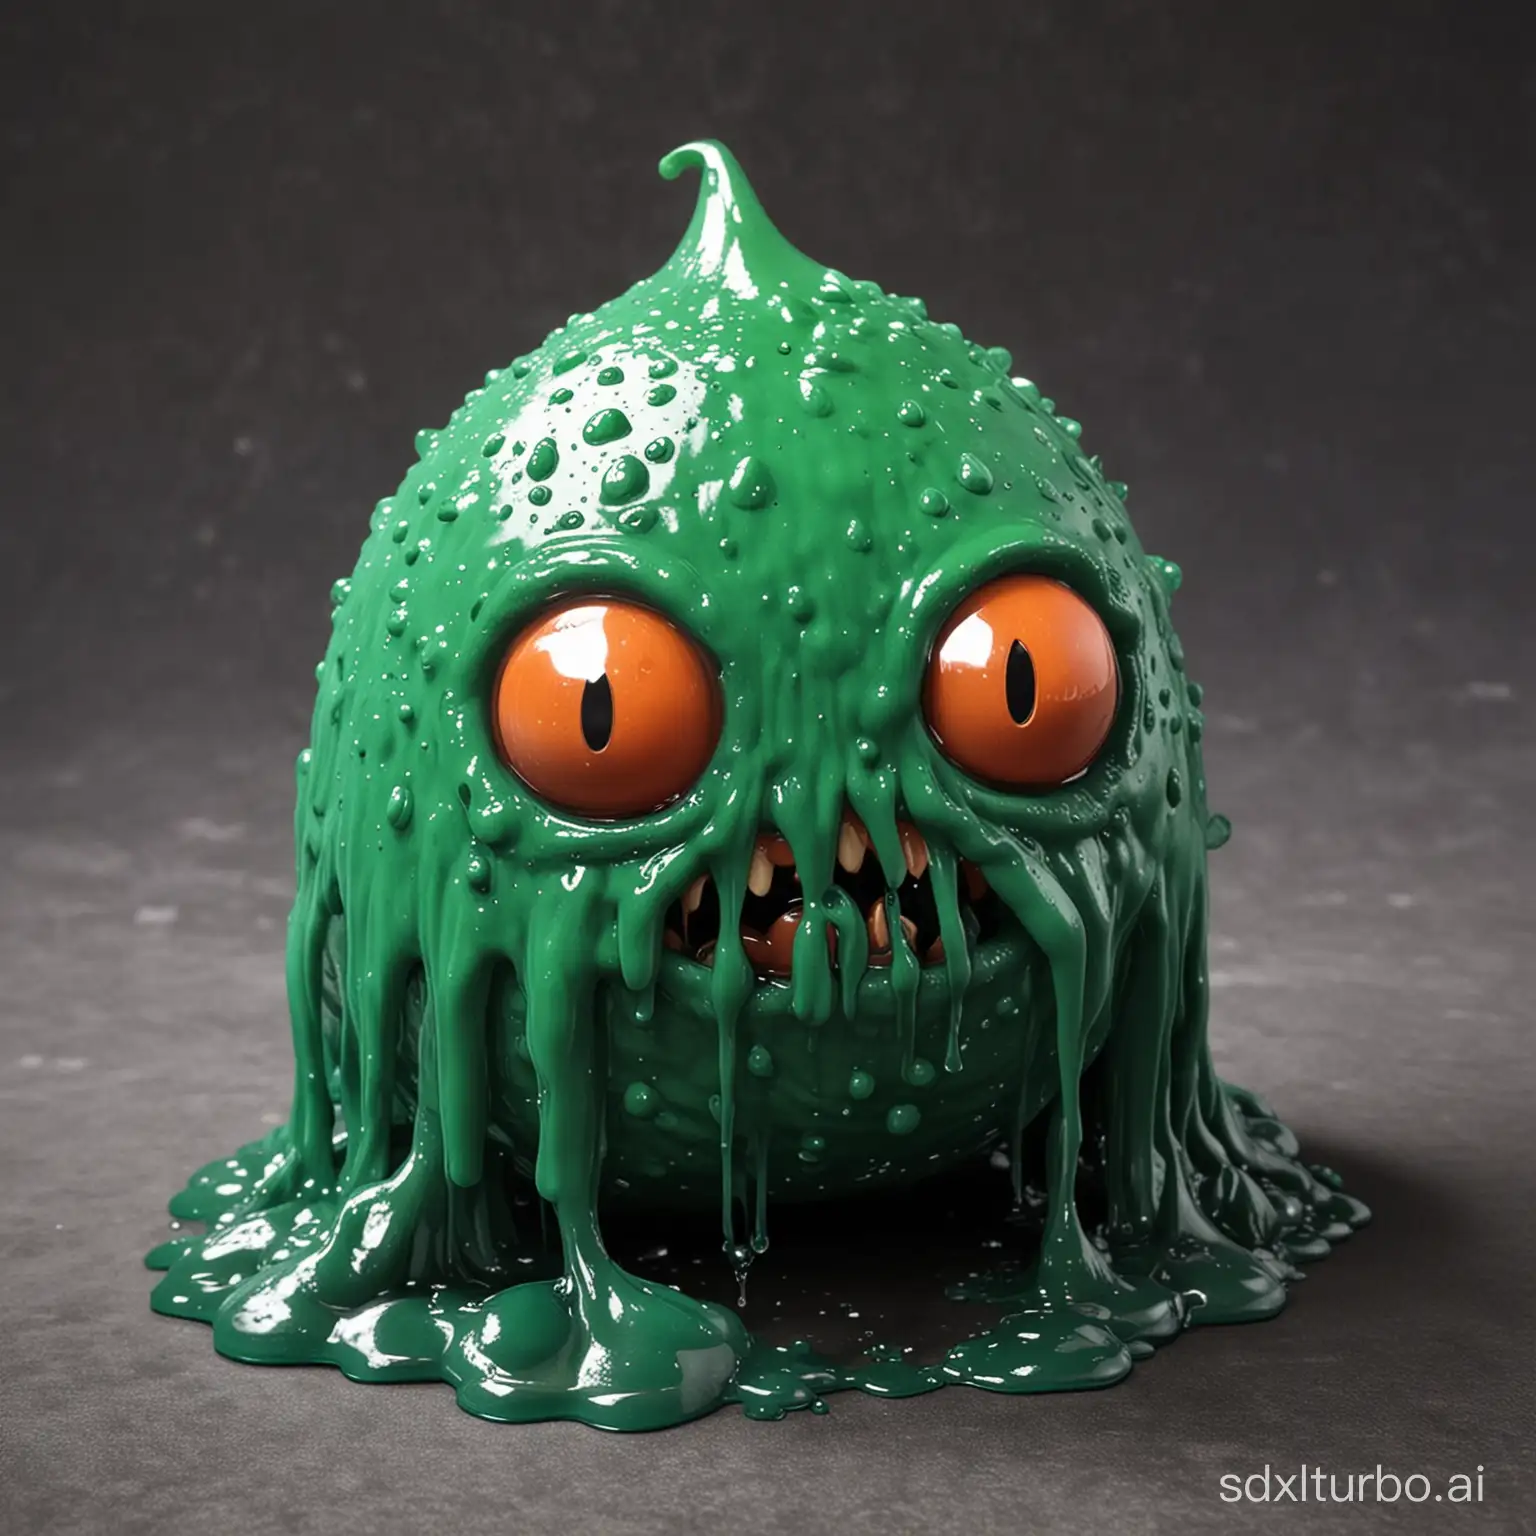 An angry looking but weak rpg slime enemy